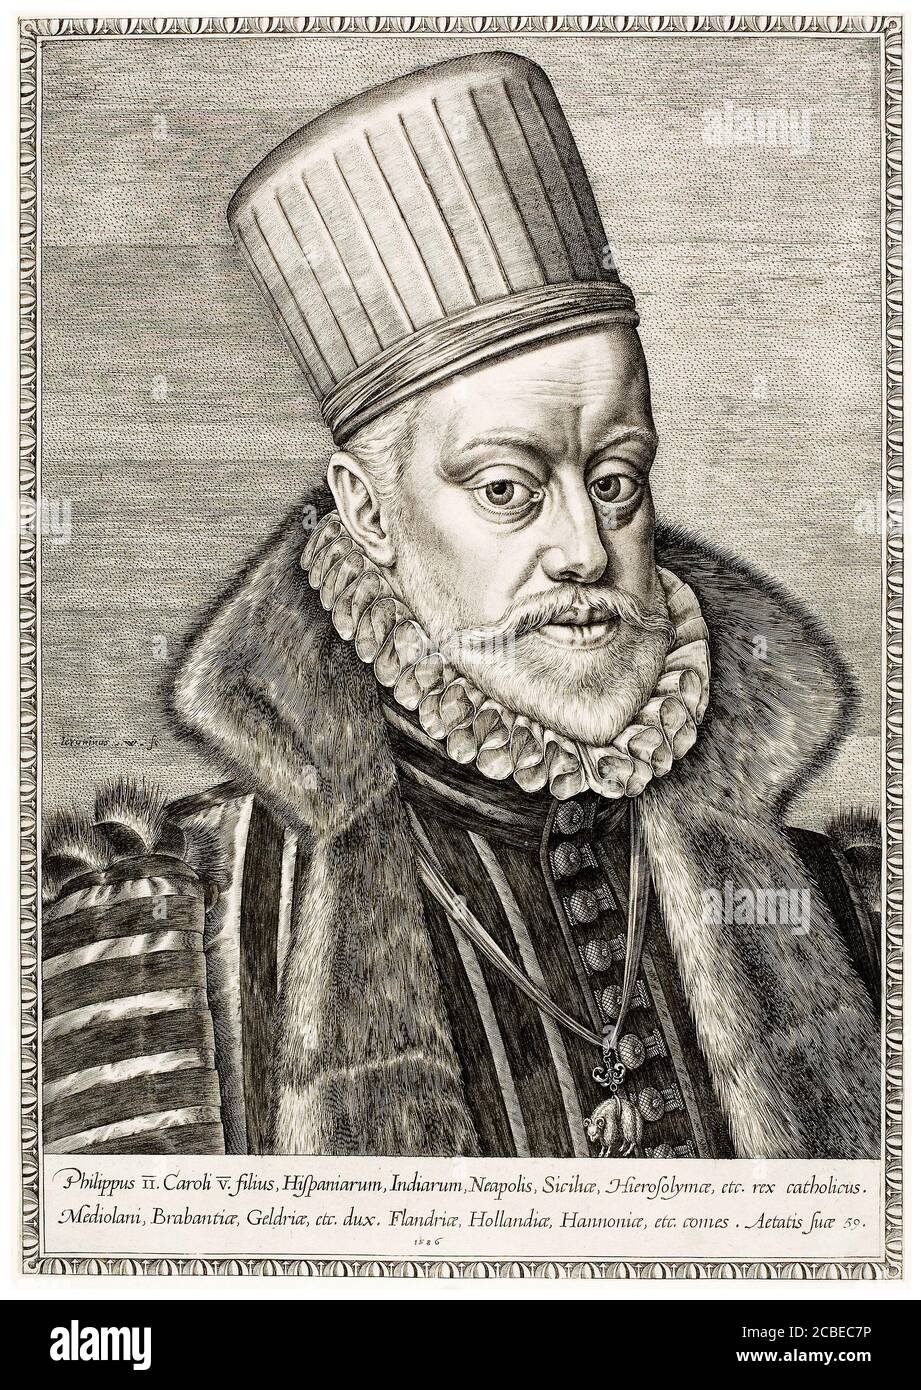 König Philipp III. Von Spanien (1578-1621), Porträtstich von Hieronymus Wierix, 1586 Stockfoto